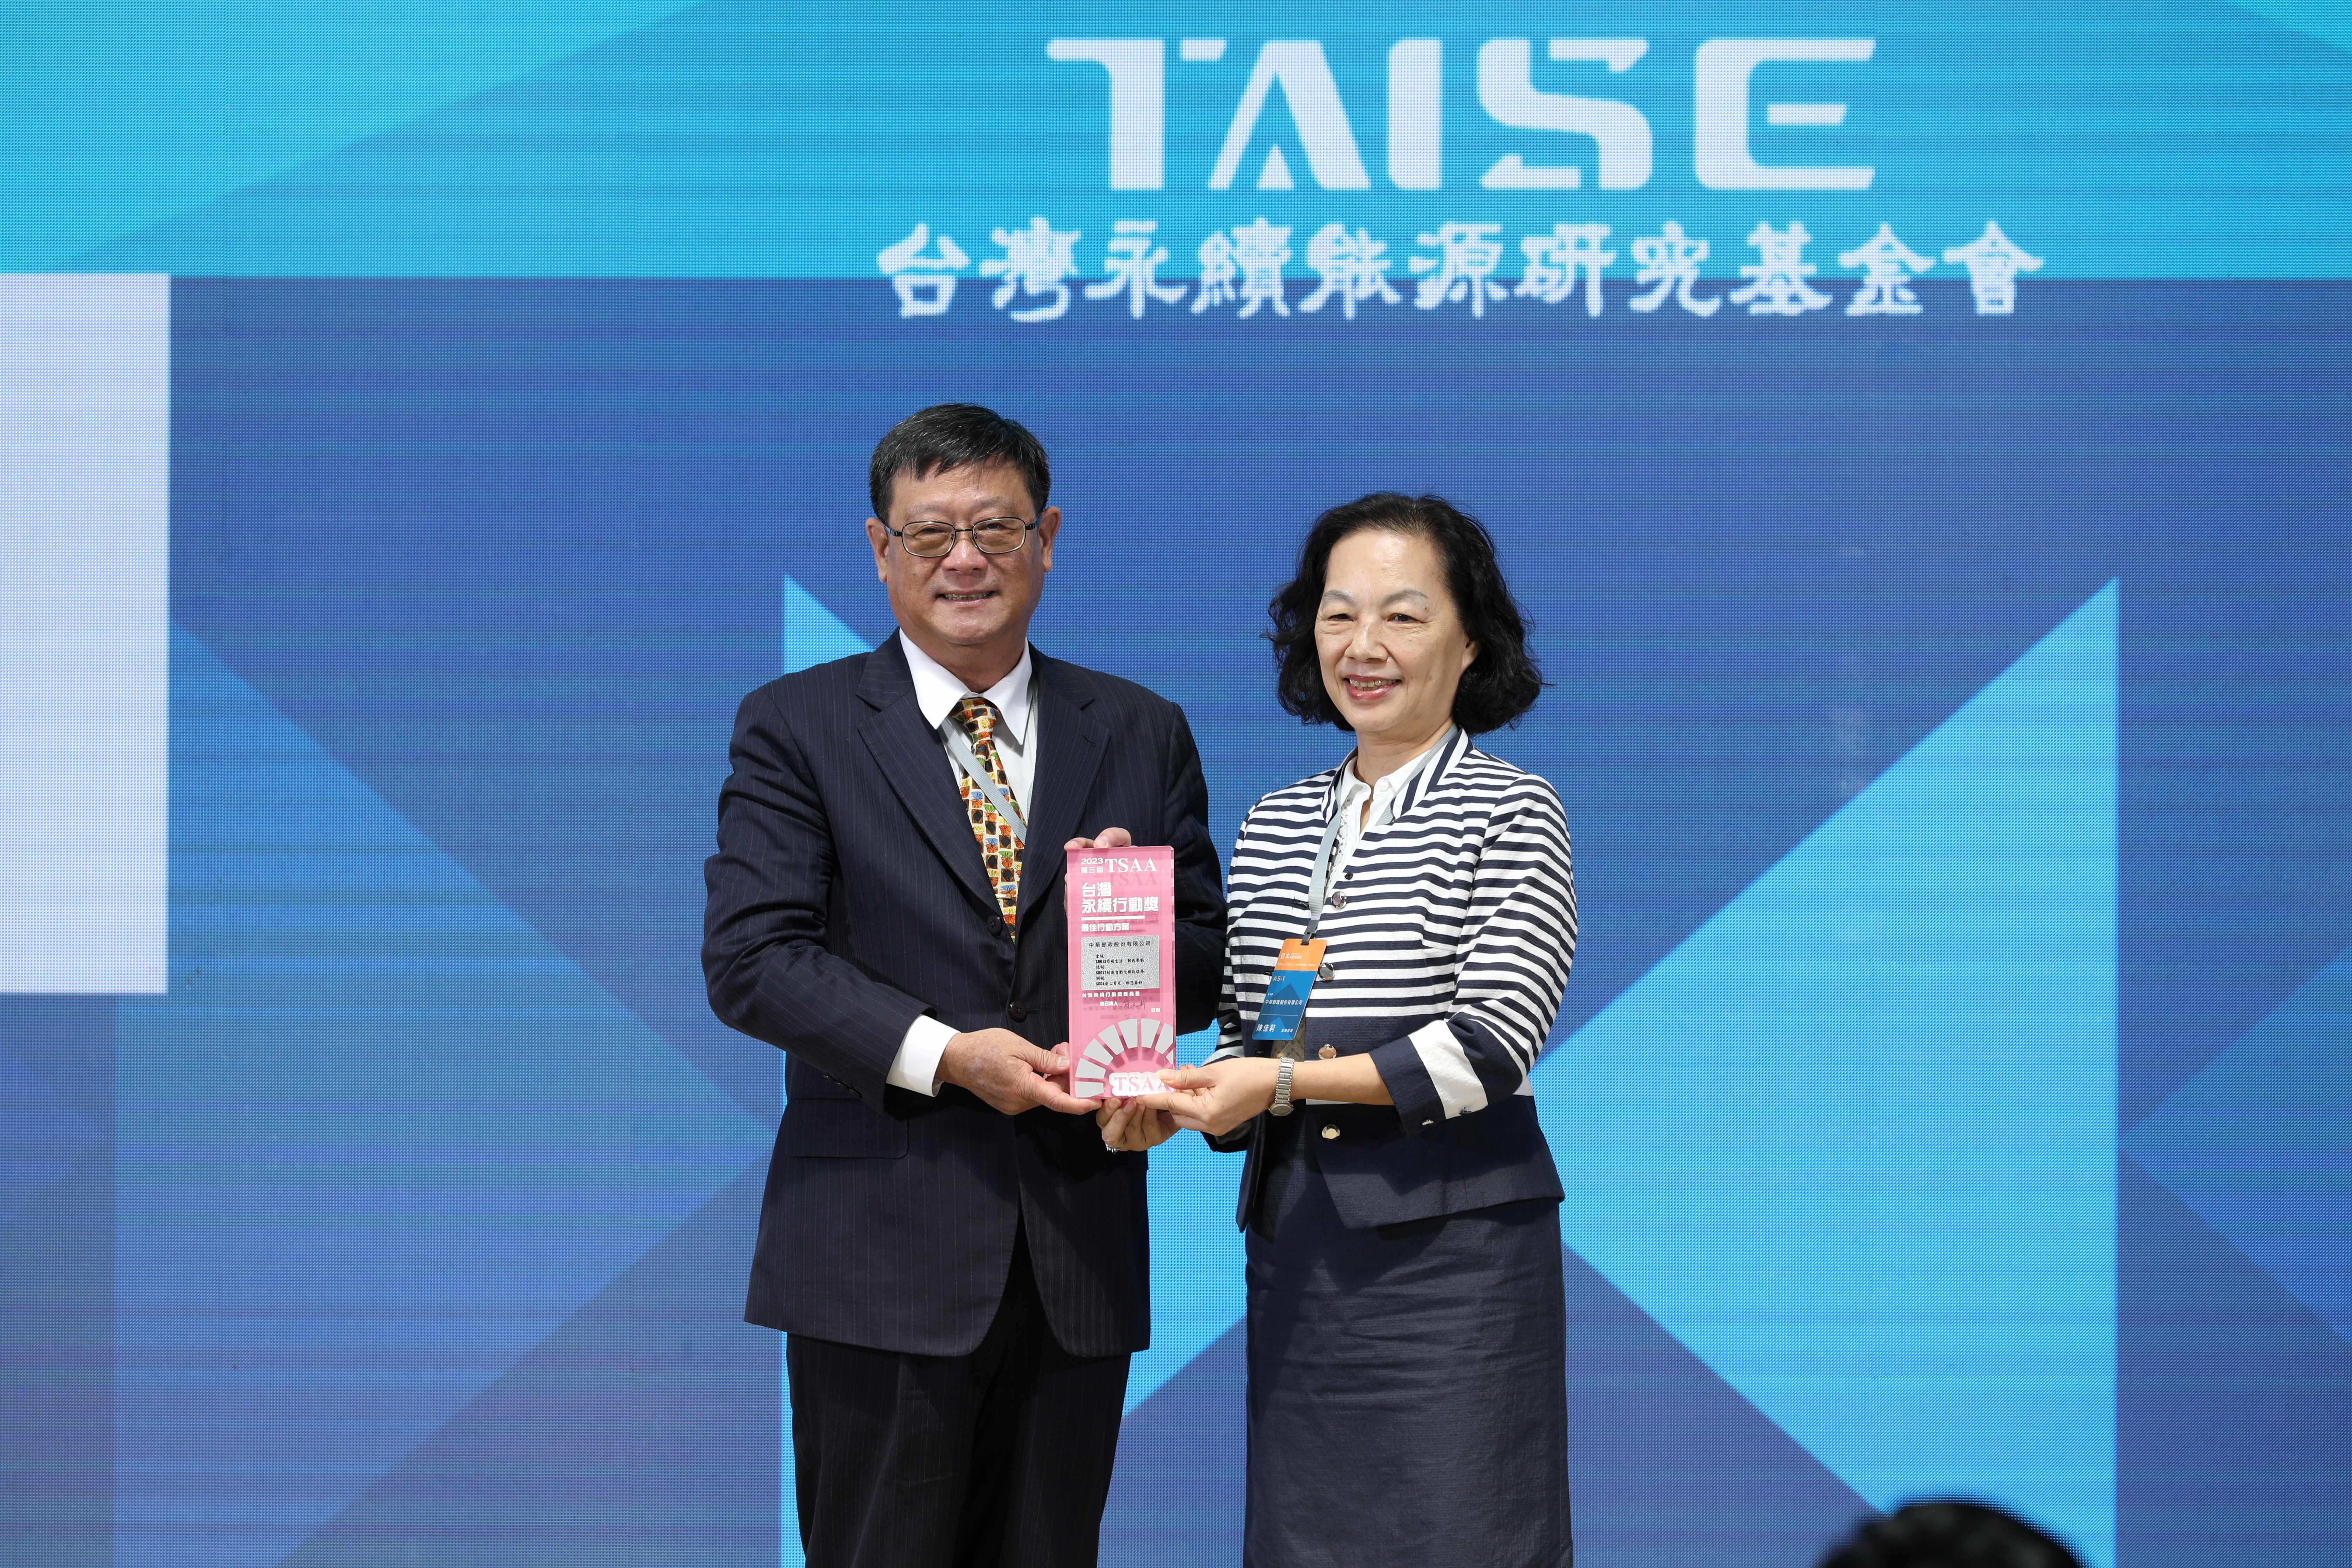 本公司永續發展委員會執行長陳副總經理佳莉代表受獎。